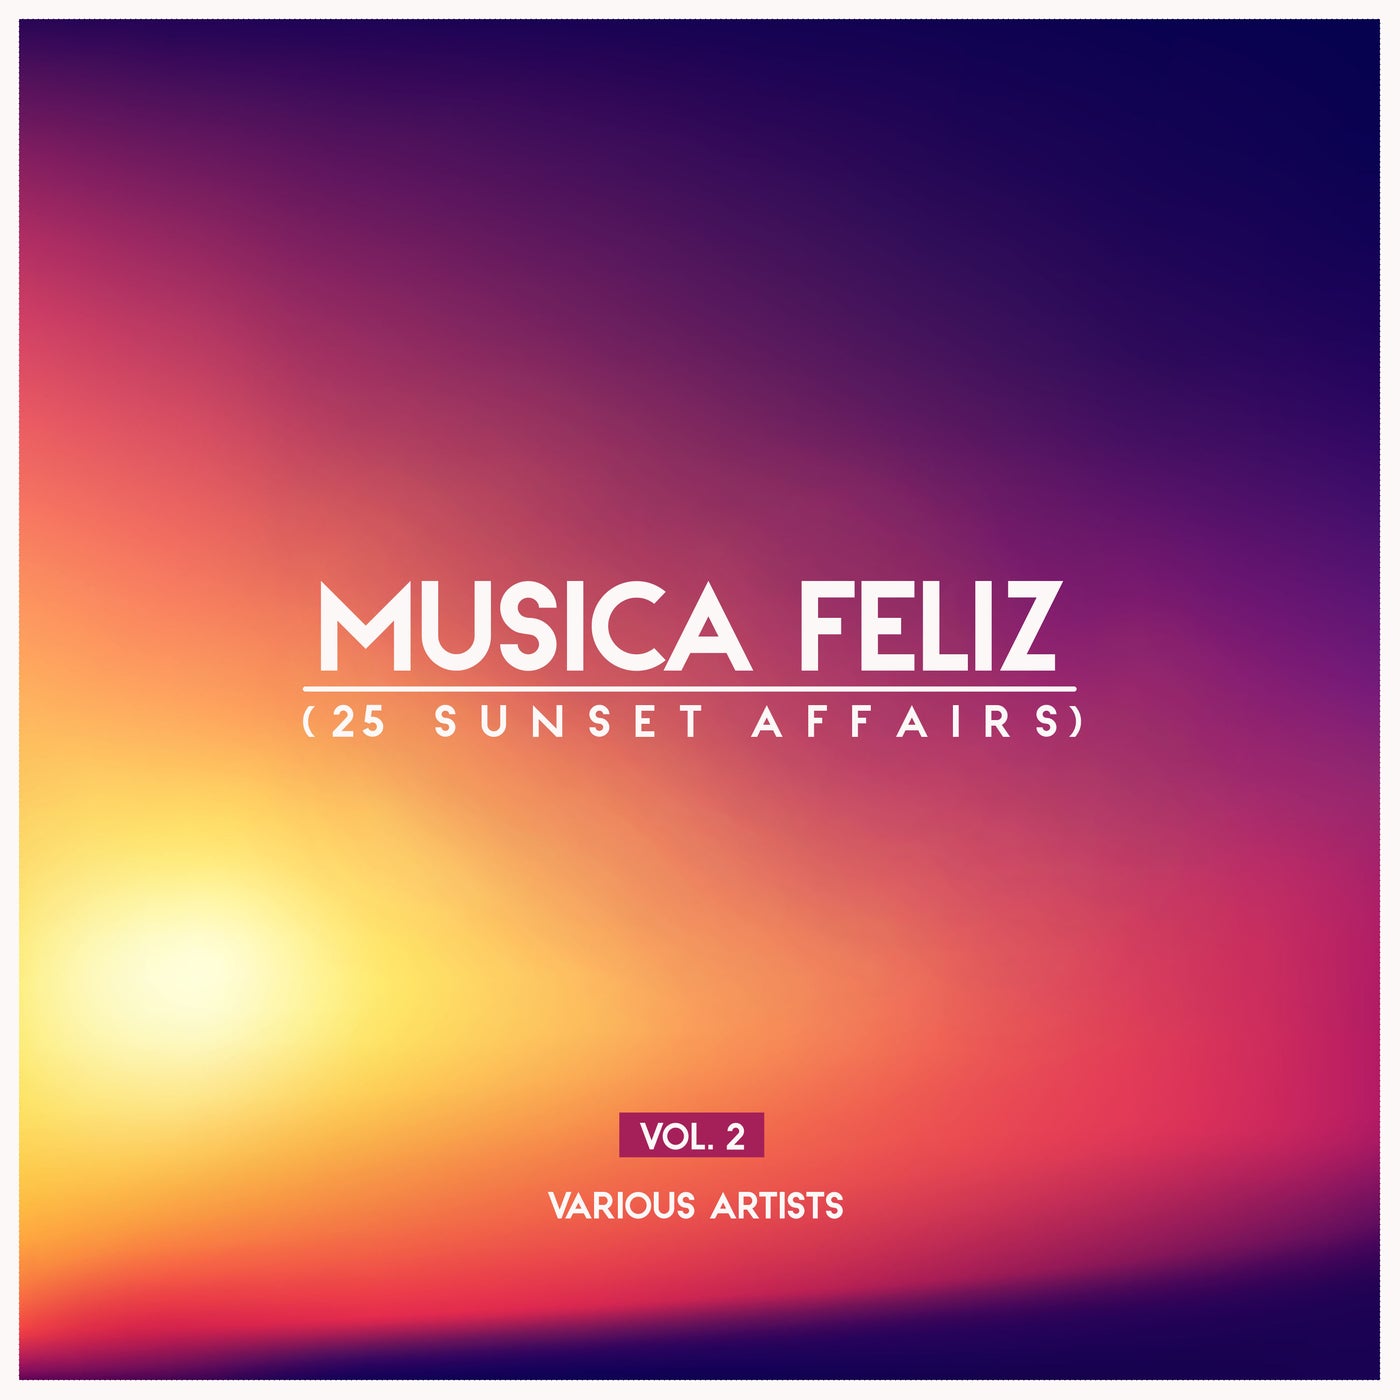 Musica Feliz, Vol. 2 (25 Sunset Affairs)